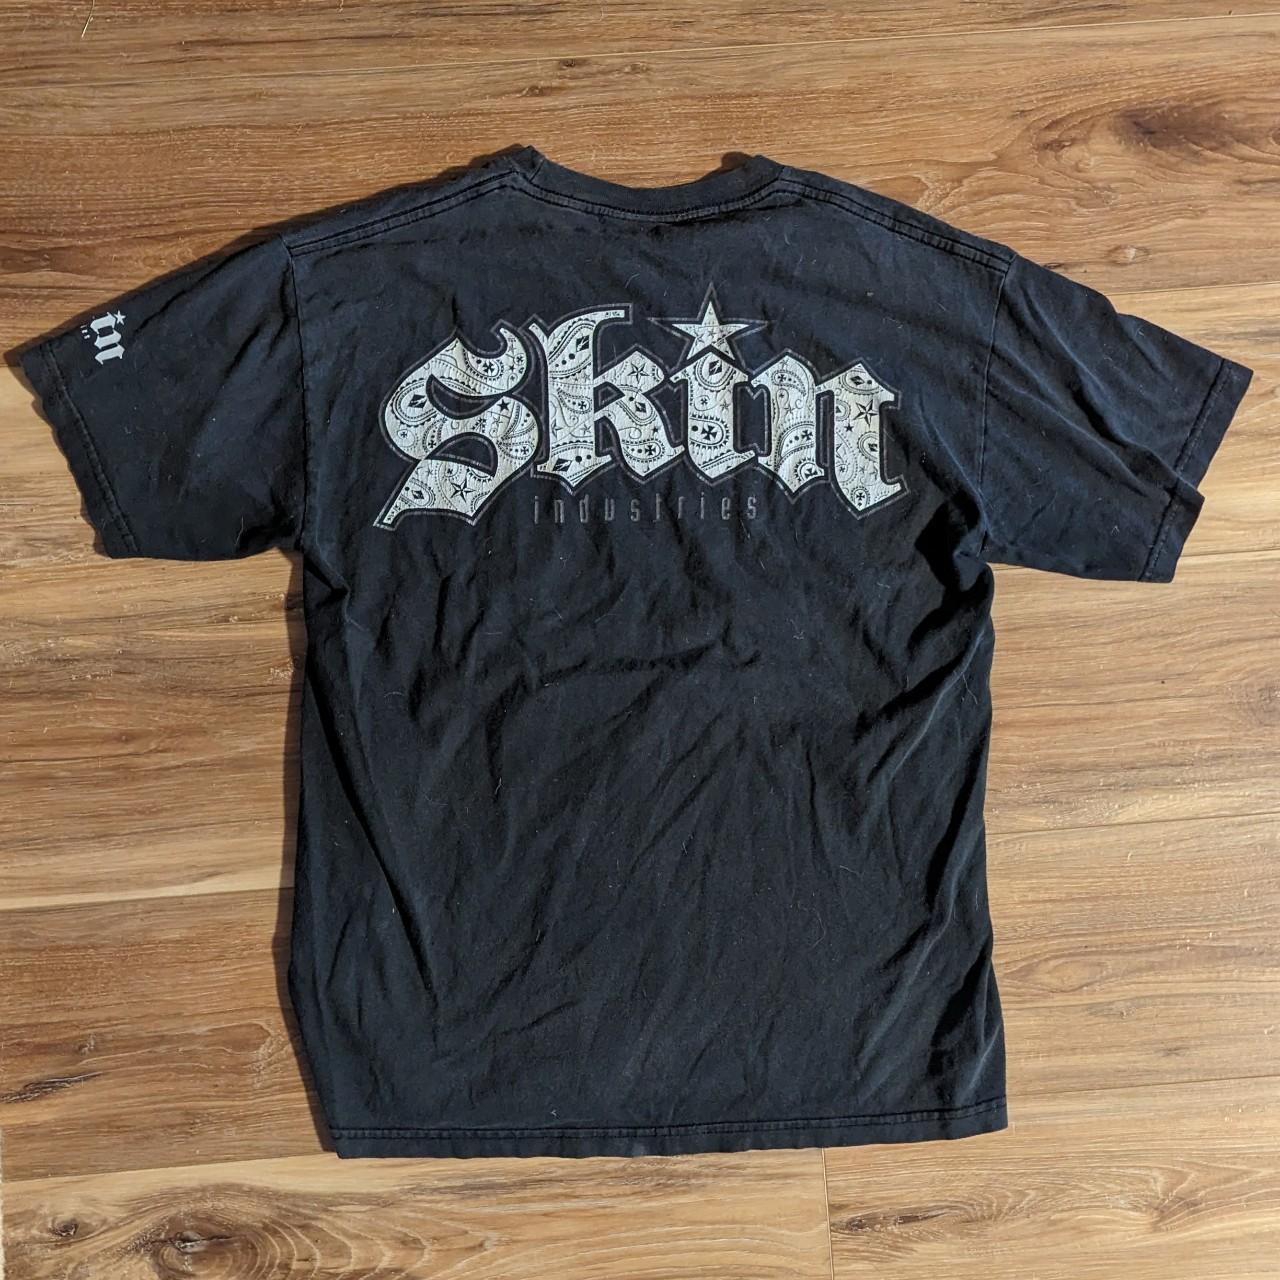 Super swag vintage skin industries shirt tee Y2K... - Depop